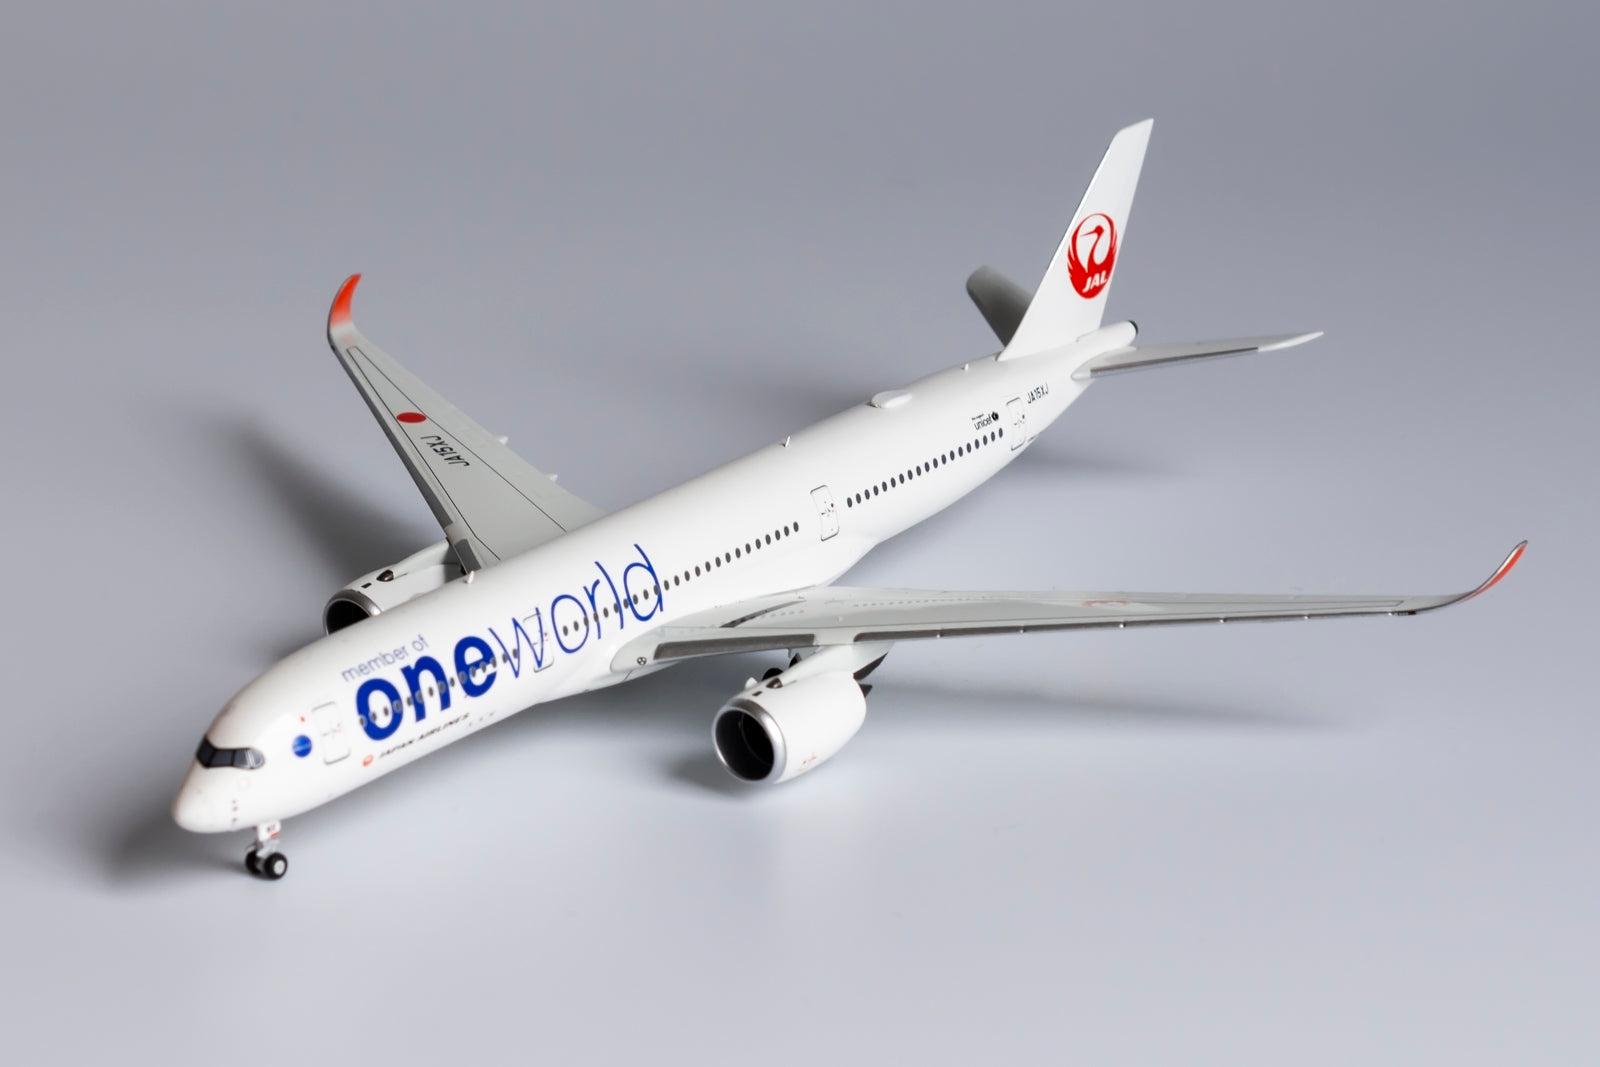 1:400 NG Models Japan Airlines (JAL) Airbus A350-900 